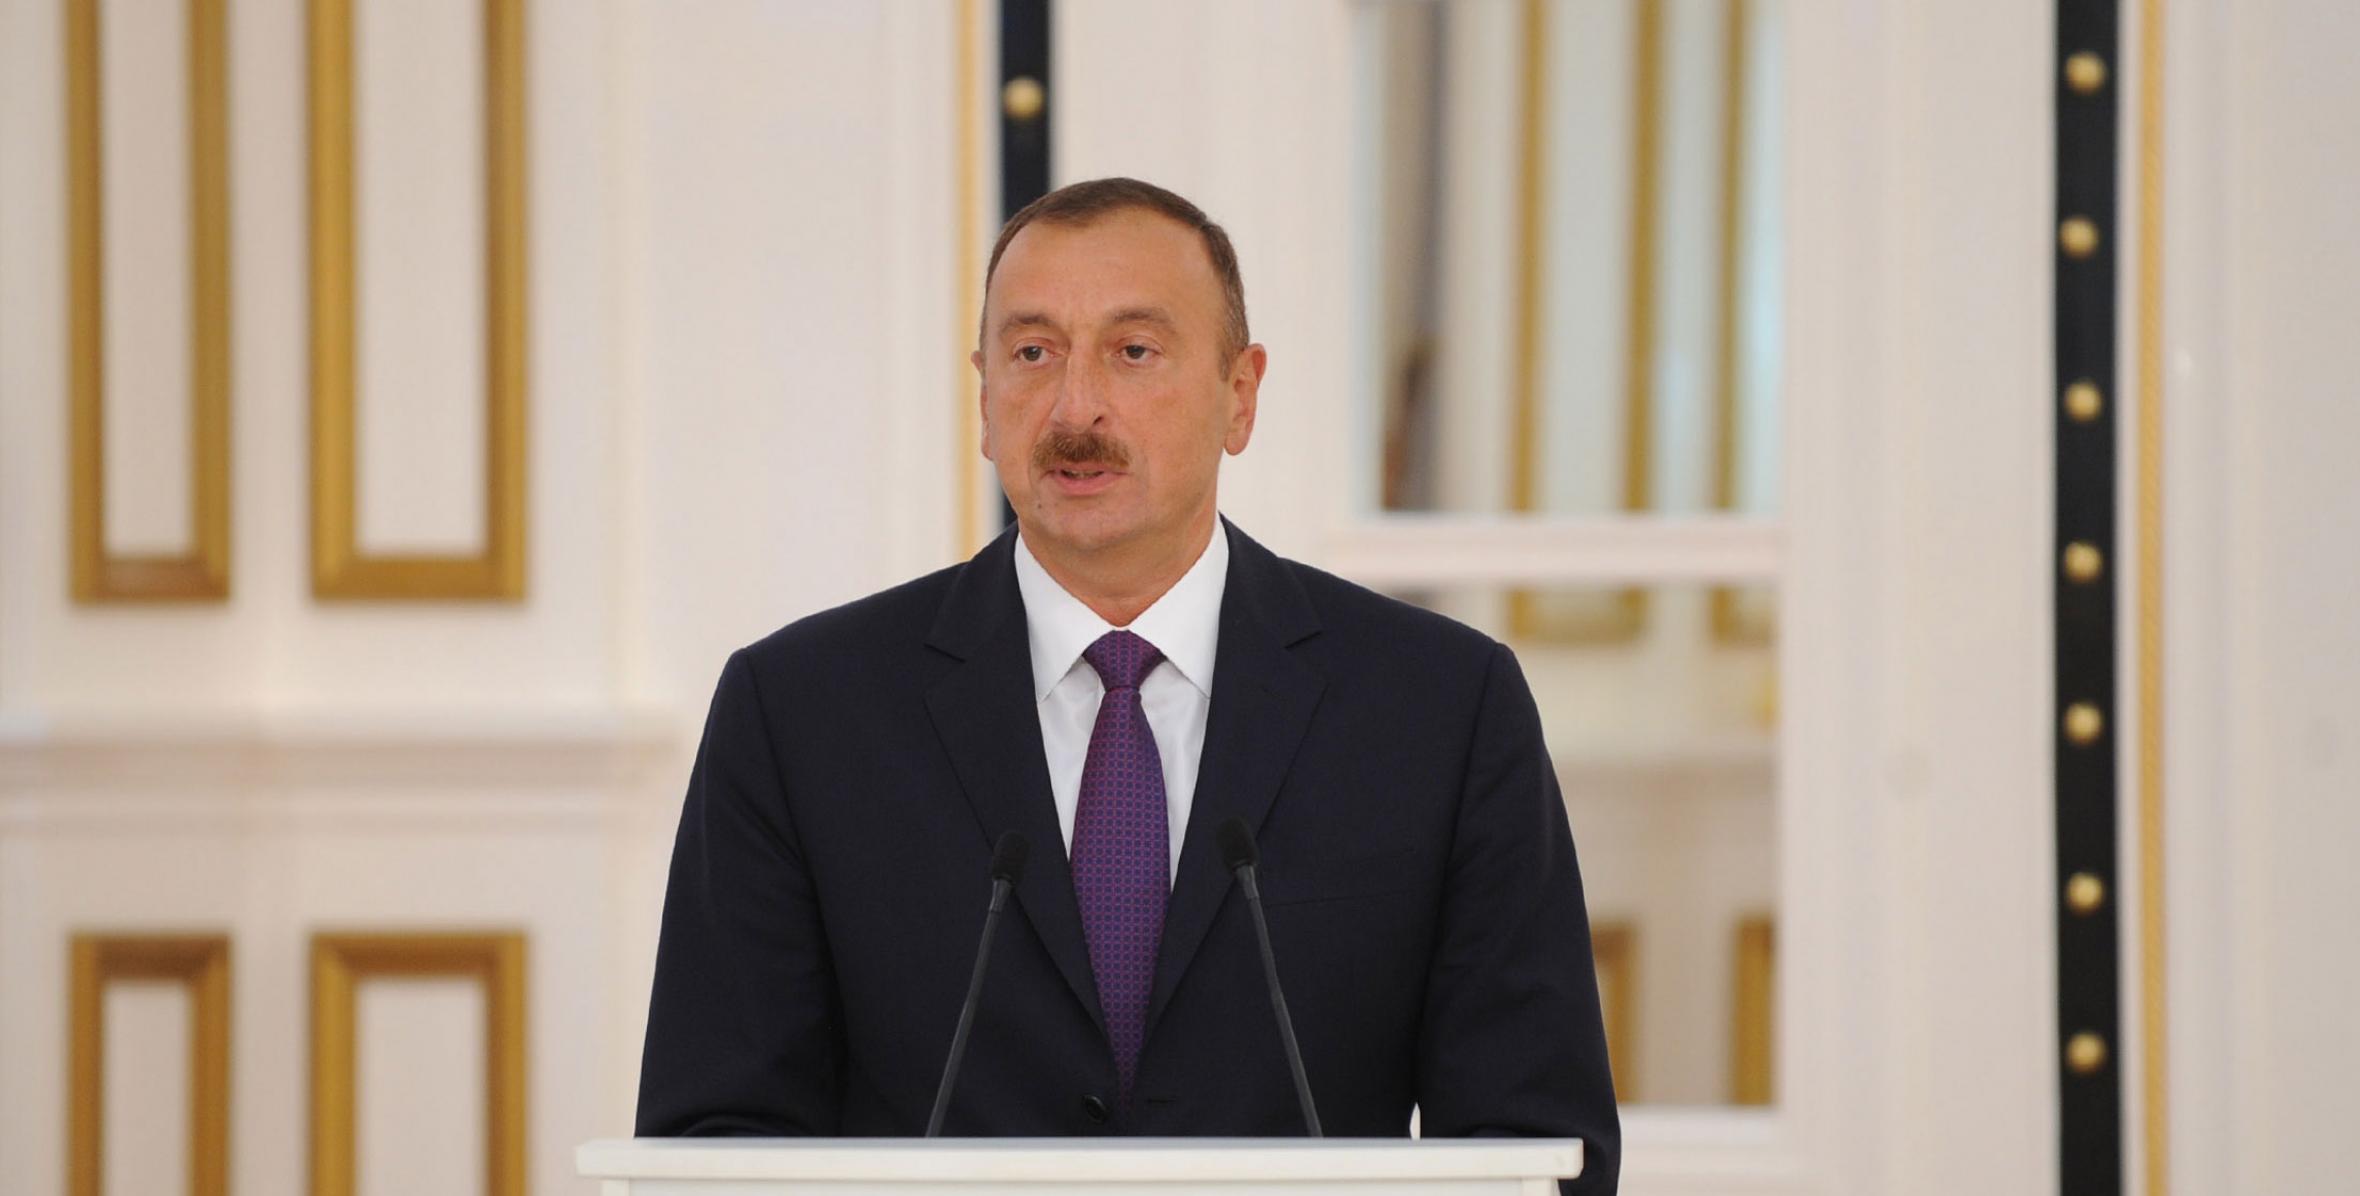 Ильхам Алиев принял участие в церемонии ифтар по случаю священного месяца Рамазан